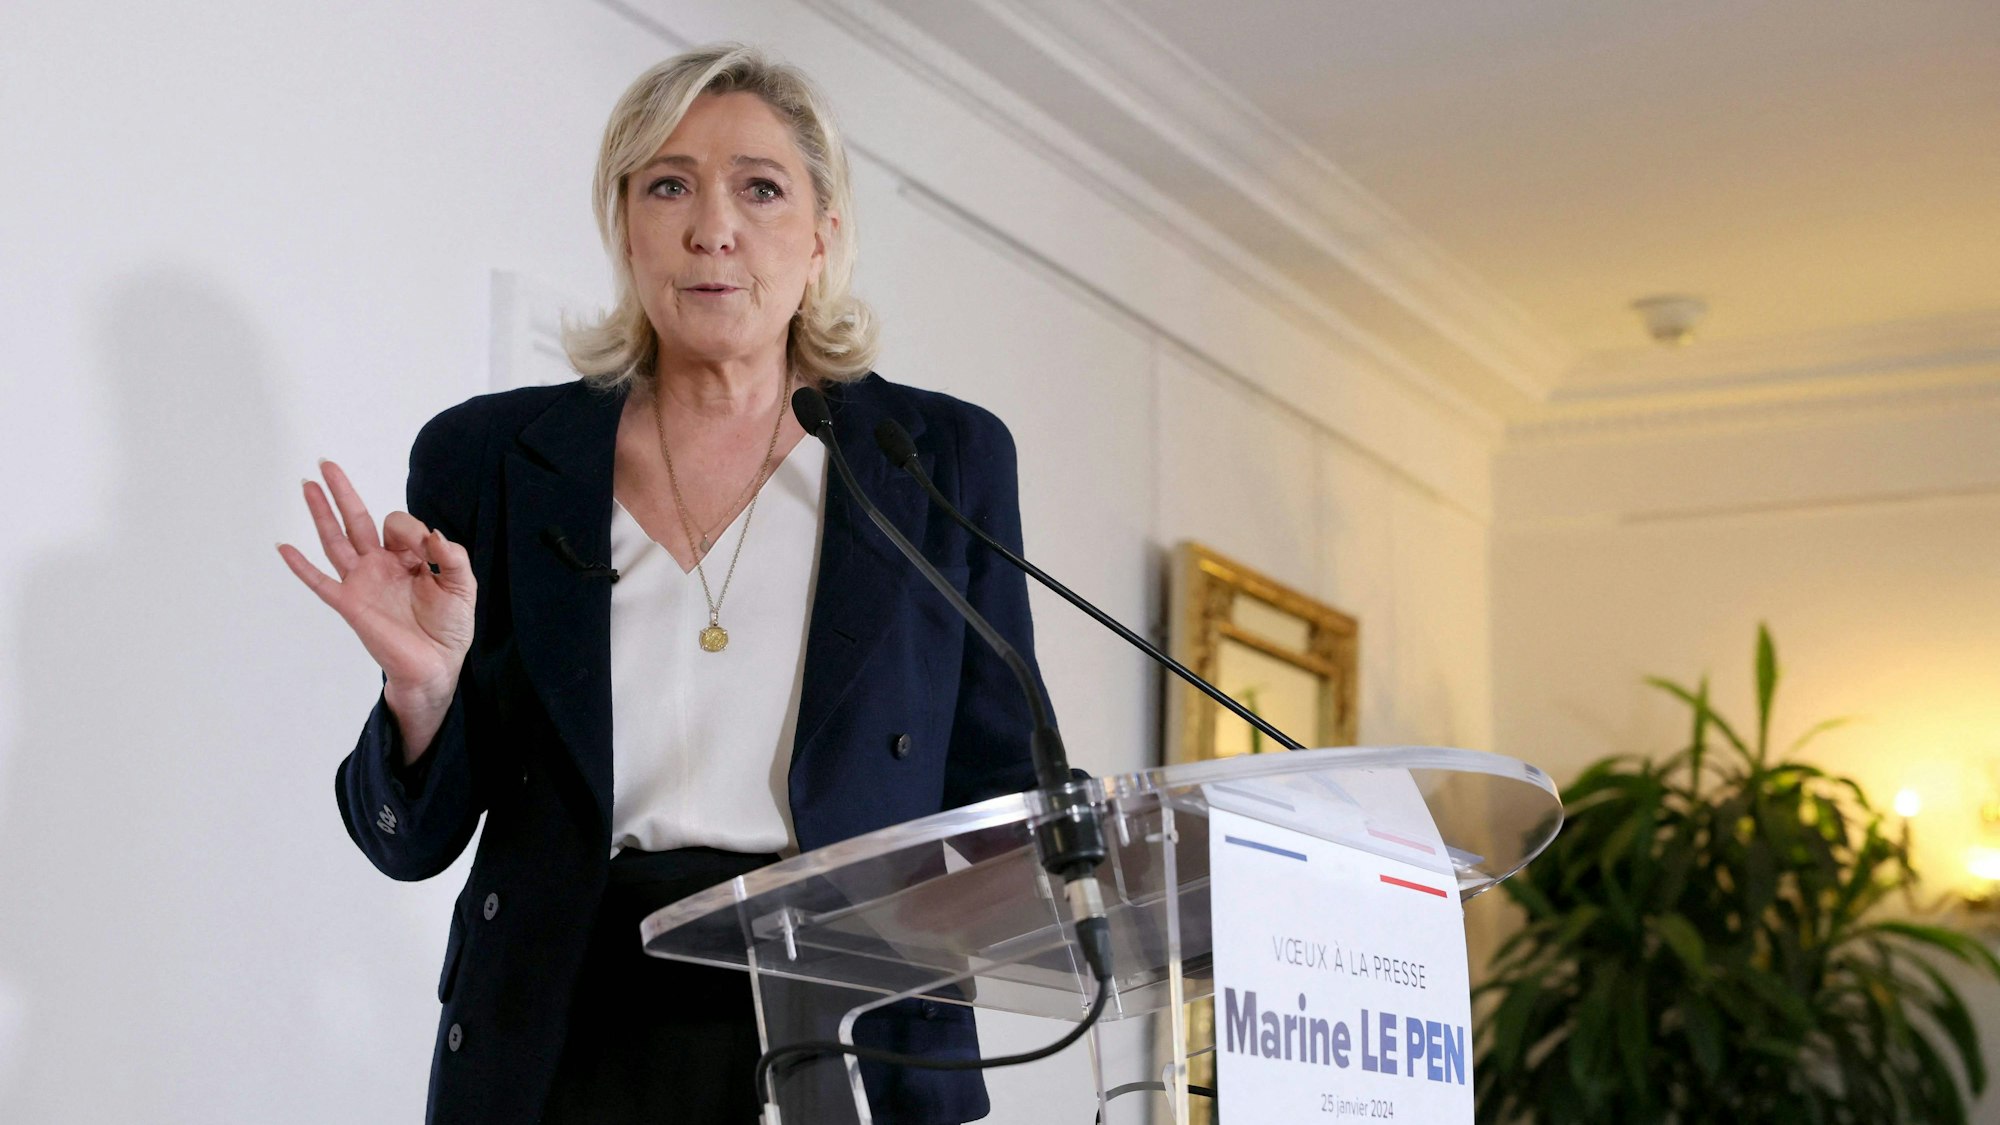 Die französische Rechtspopulistin Marine Le Pen bei einer Pressekonferenz. Mit den Vertreibungsplänen der AfD sei sie „ganz und gar nicht einverstanden“, erklärte Le Pen.